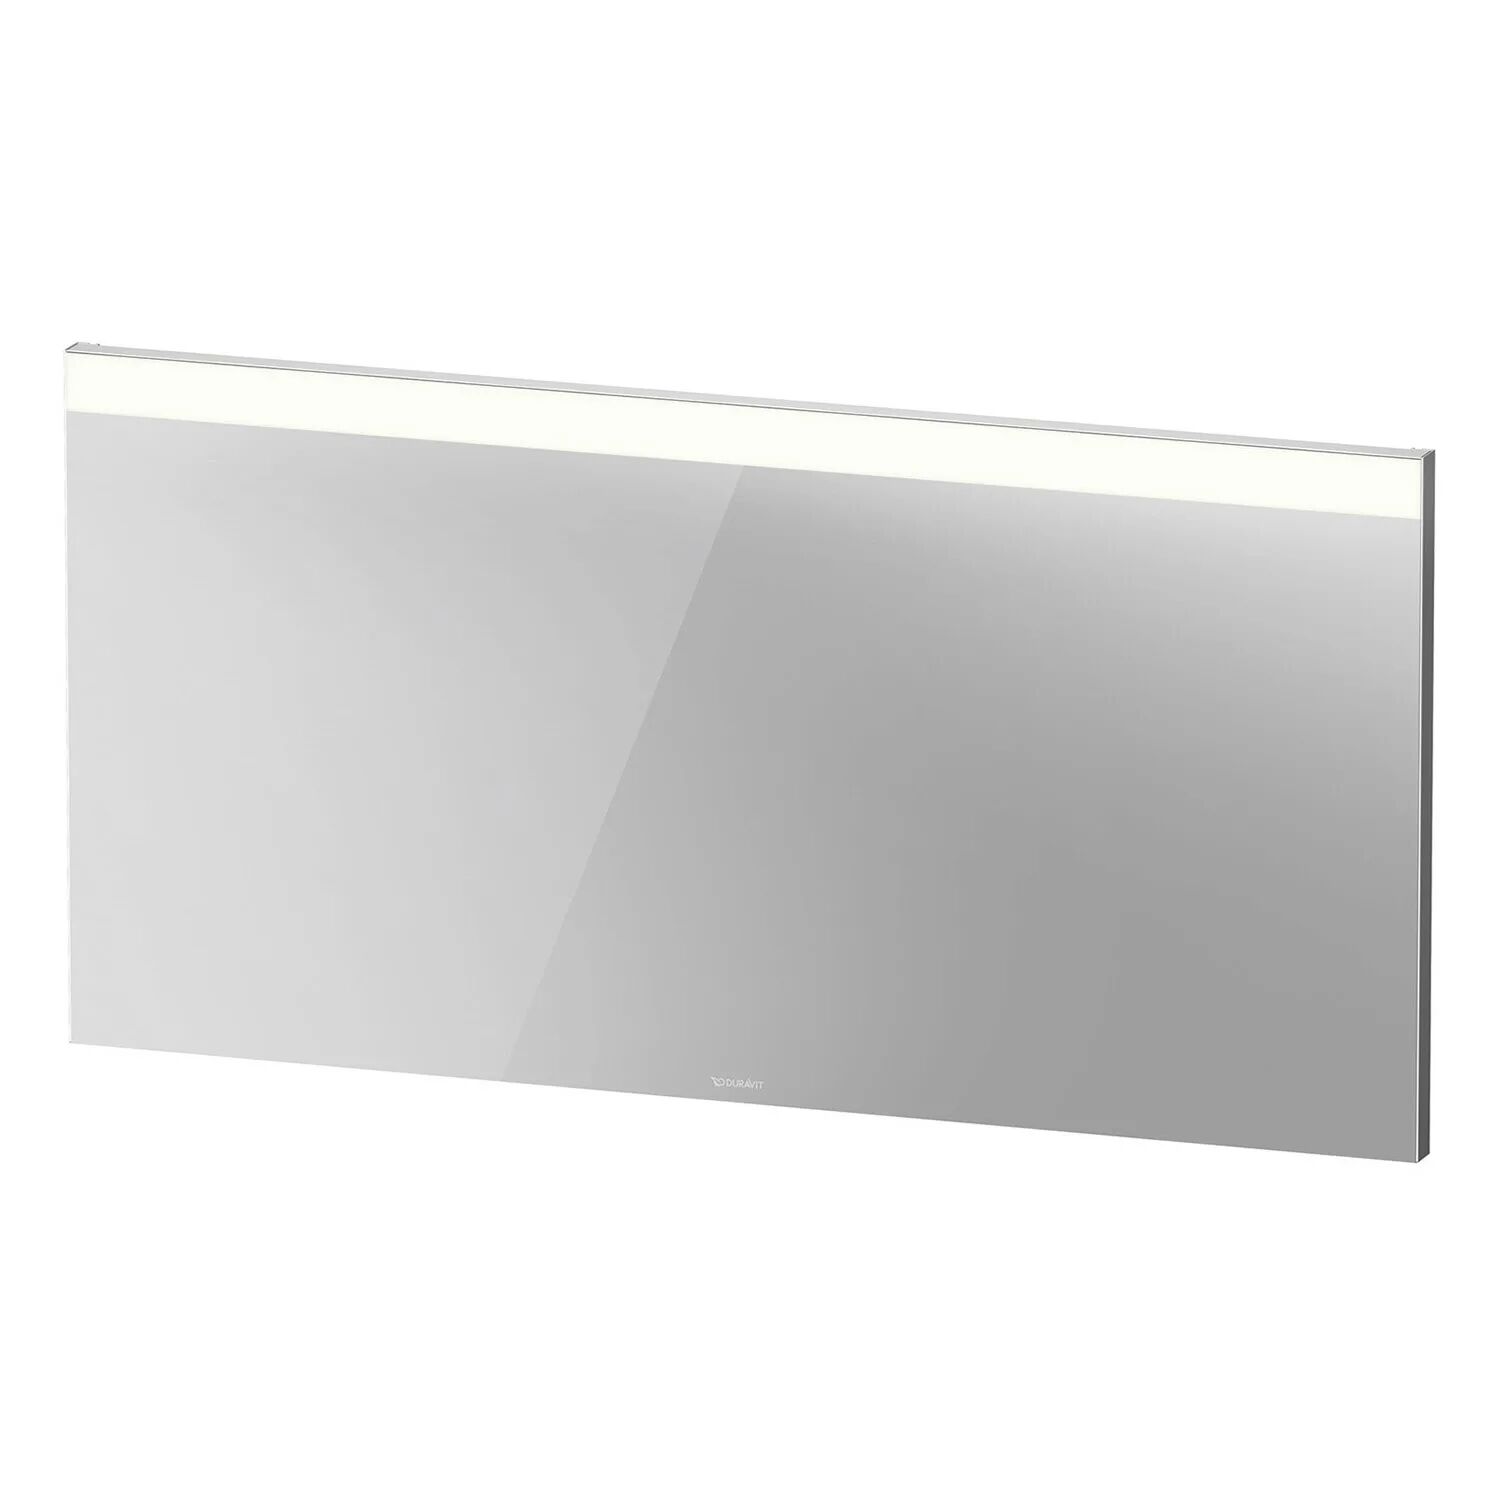 Duravit Spiegel Best Version mit Beleuchtung oben und Spiegelheizung 140 cm Licht und Spiegel B: 140 T: 3,5 H: 70 cm weiß matt LM7860D0000